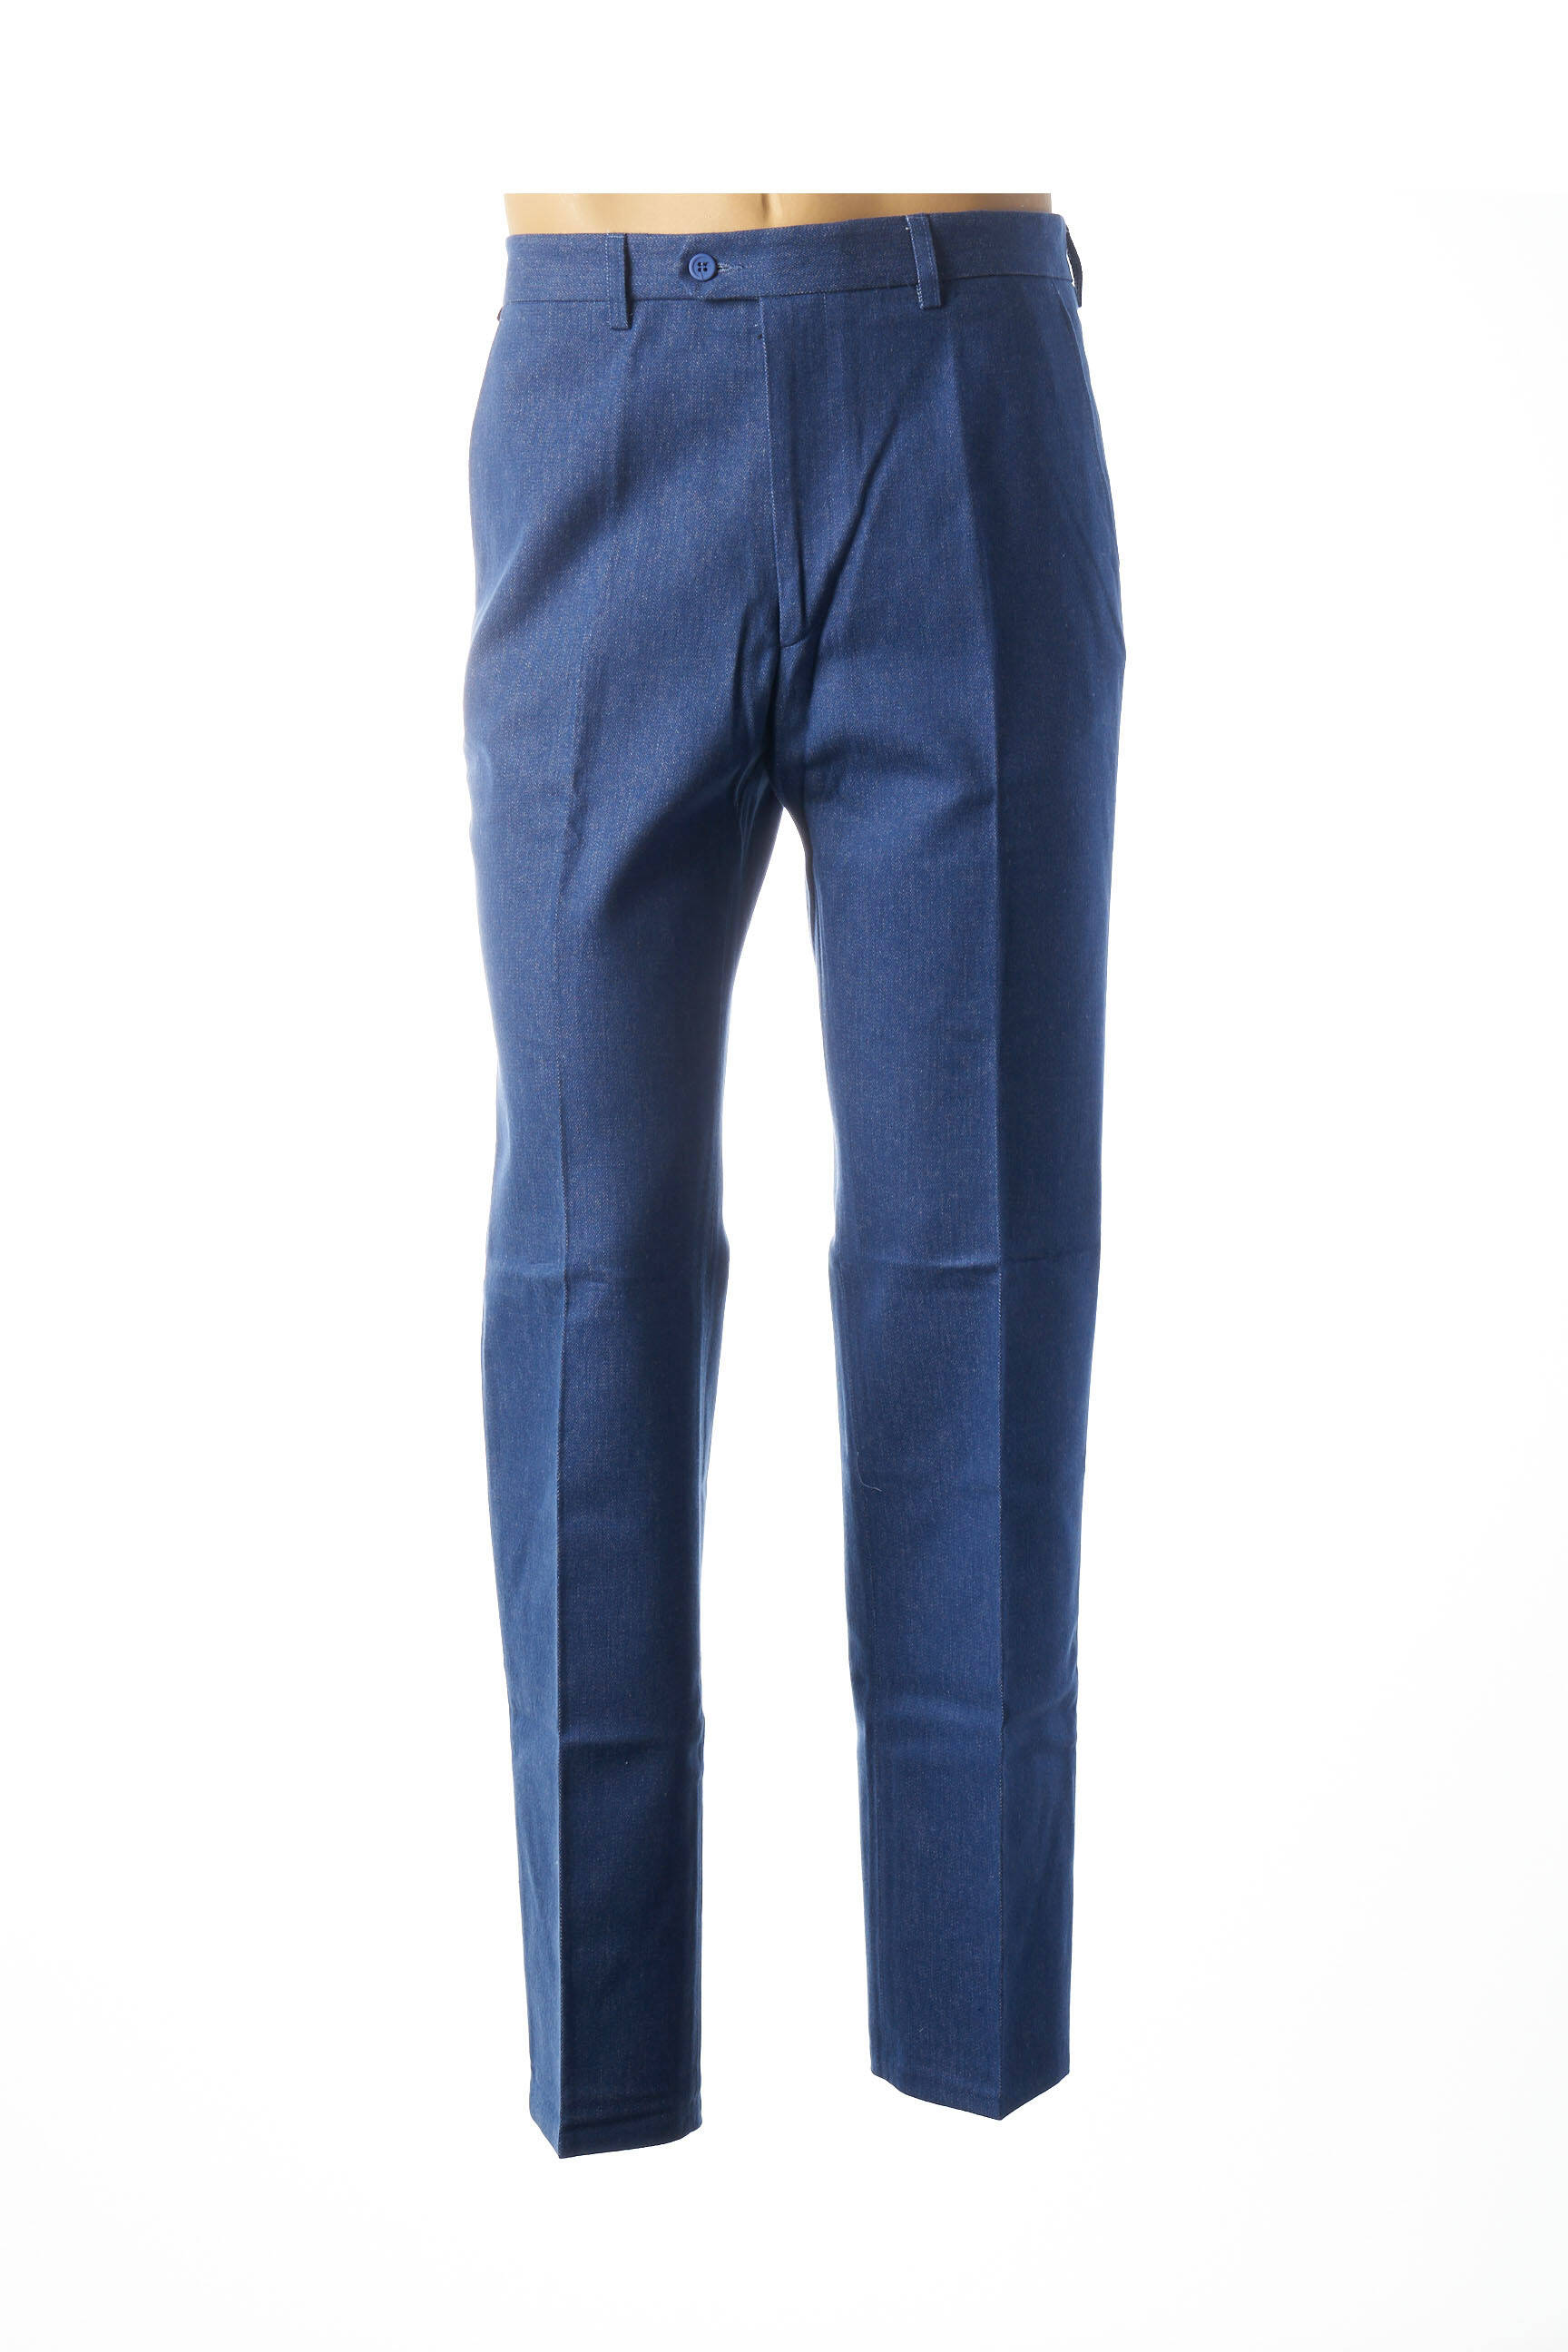 Lma Pantalons Slim Homme De Couleur Bleu 1701375-bleu00 - Modz